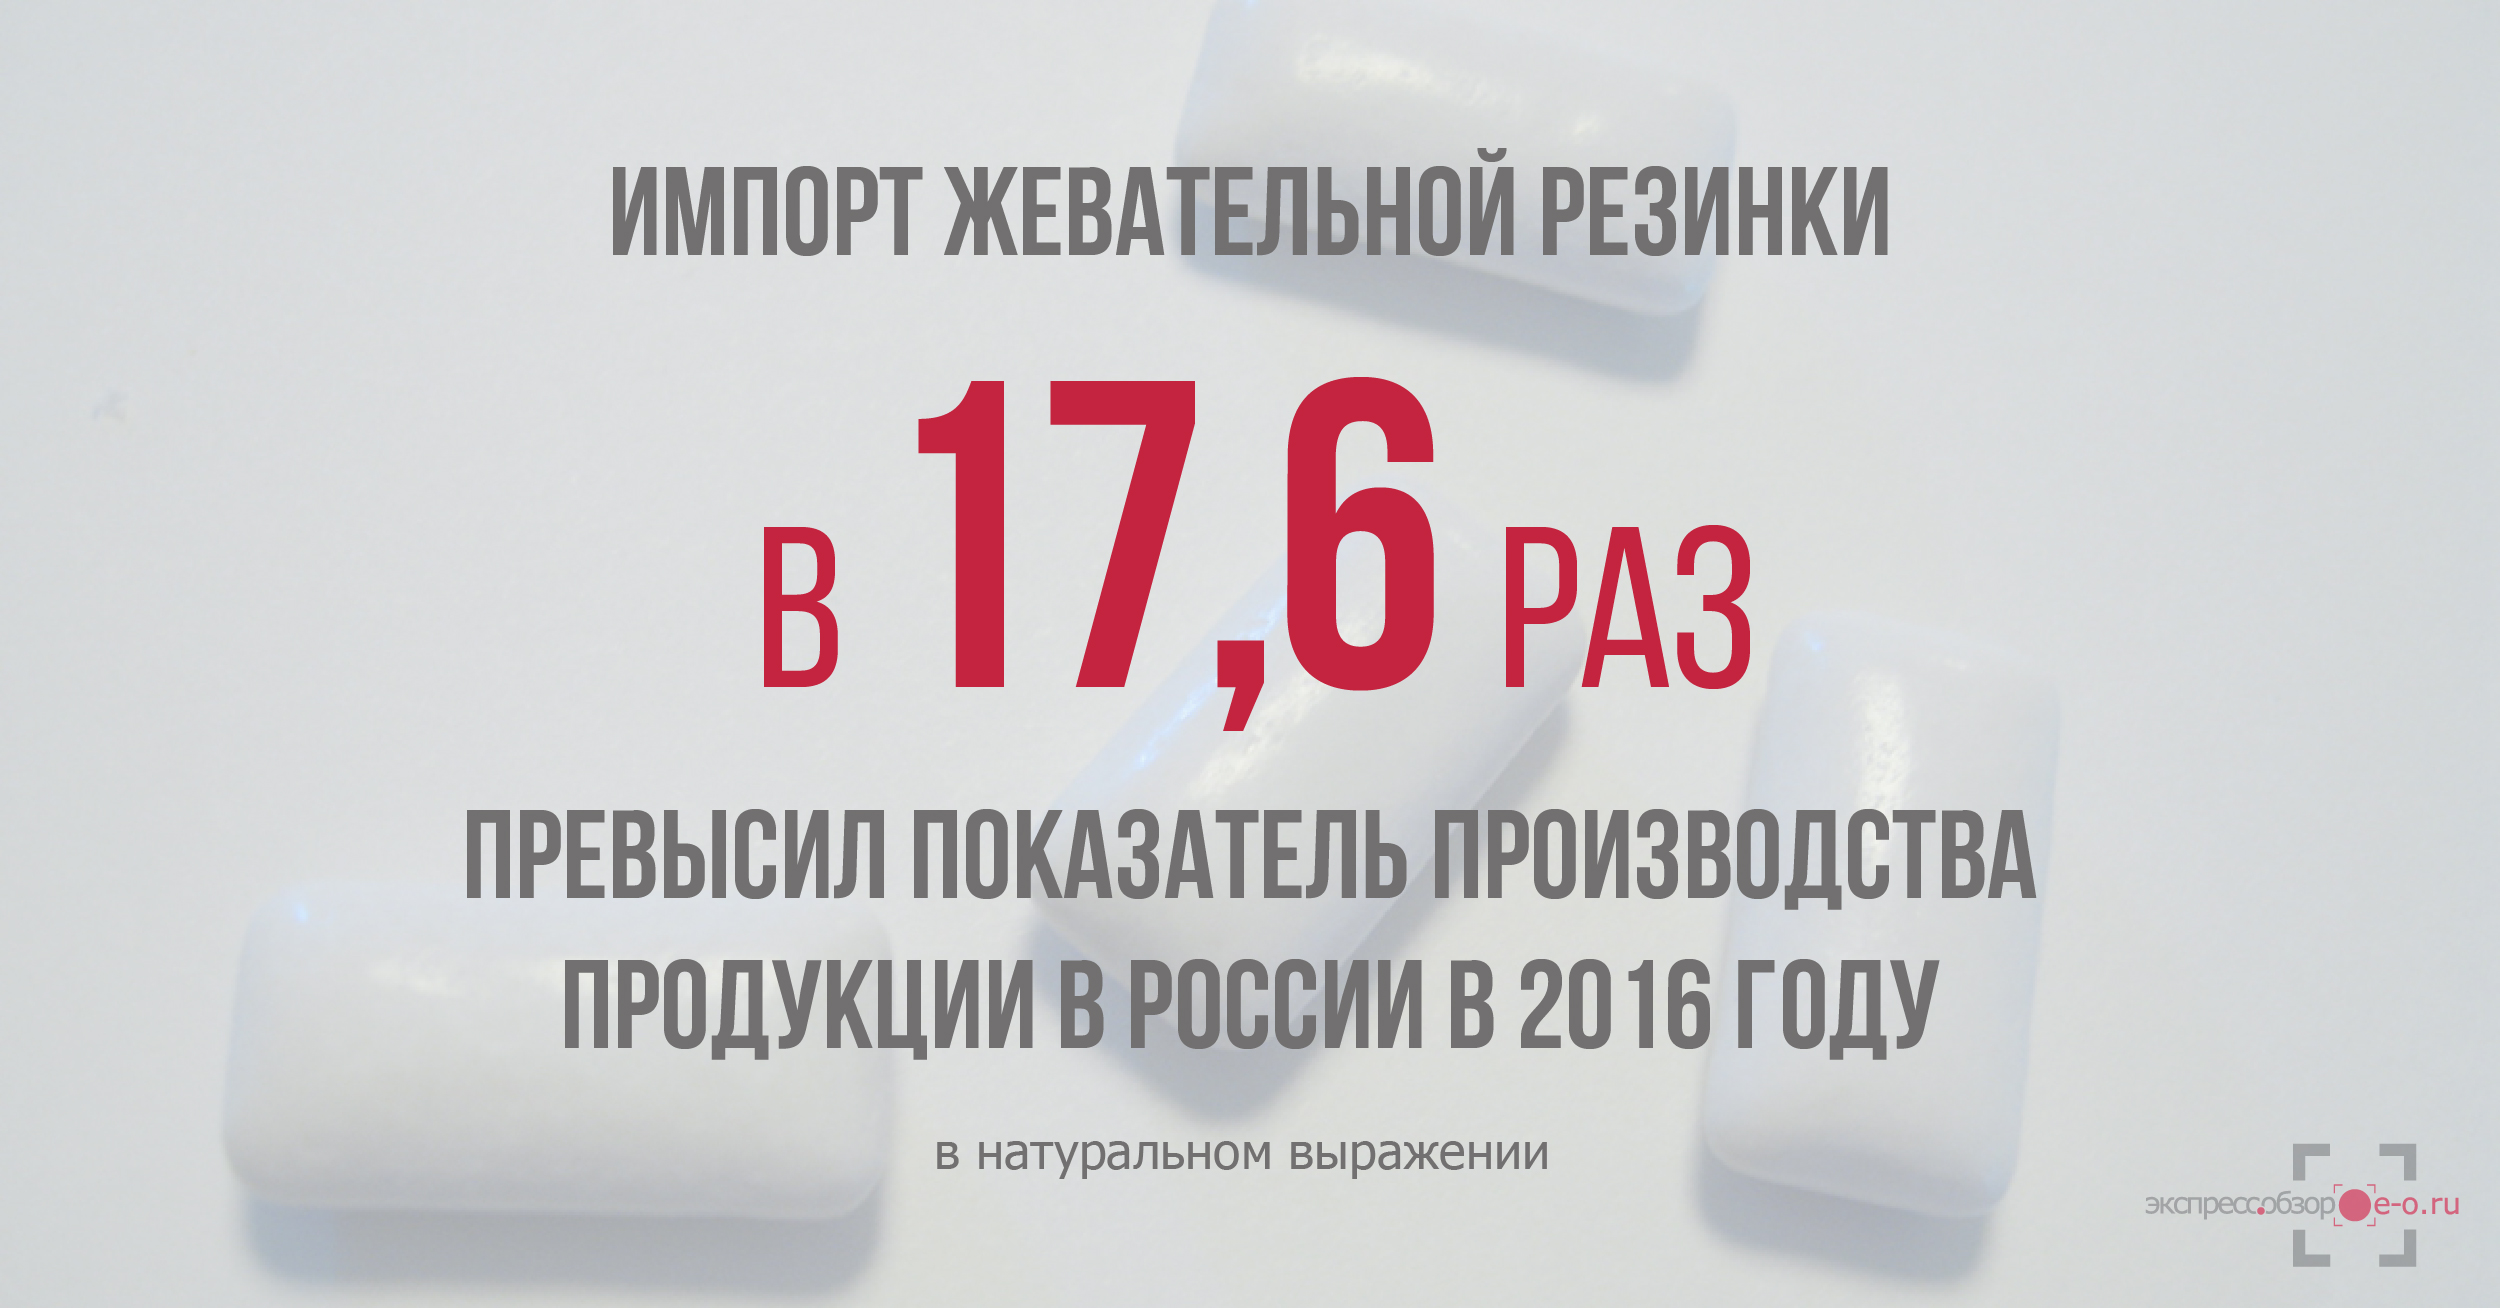 Импорт и производство жевательной резинки в России в 2016 году